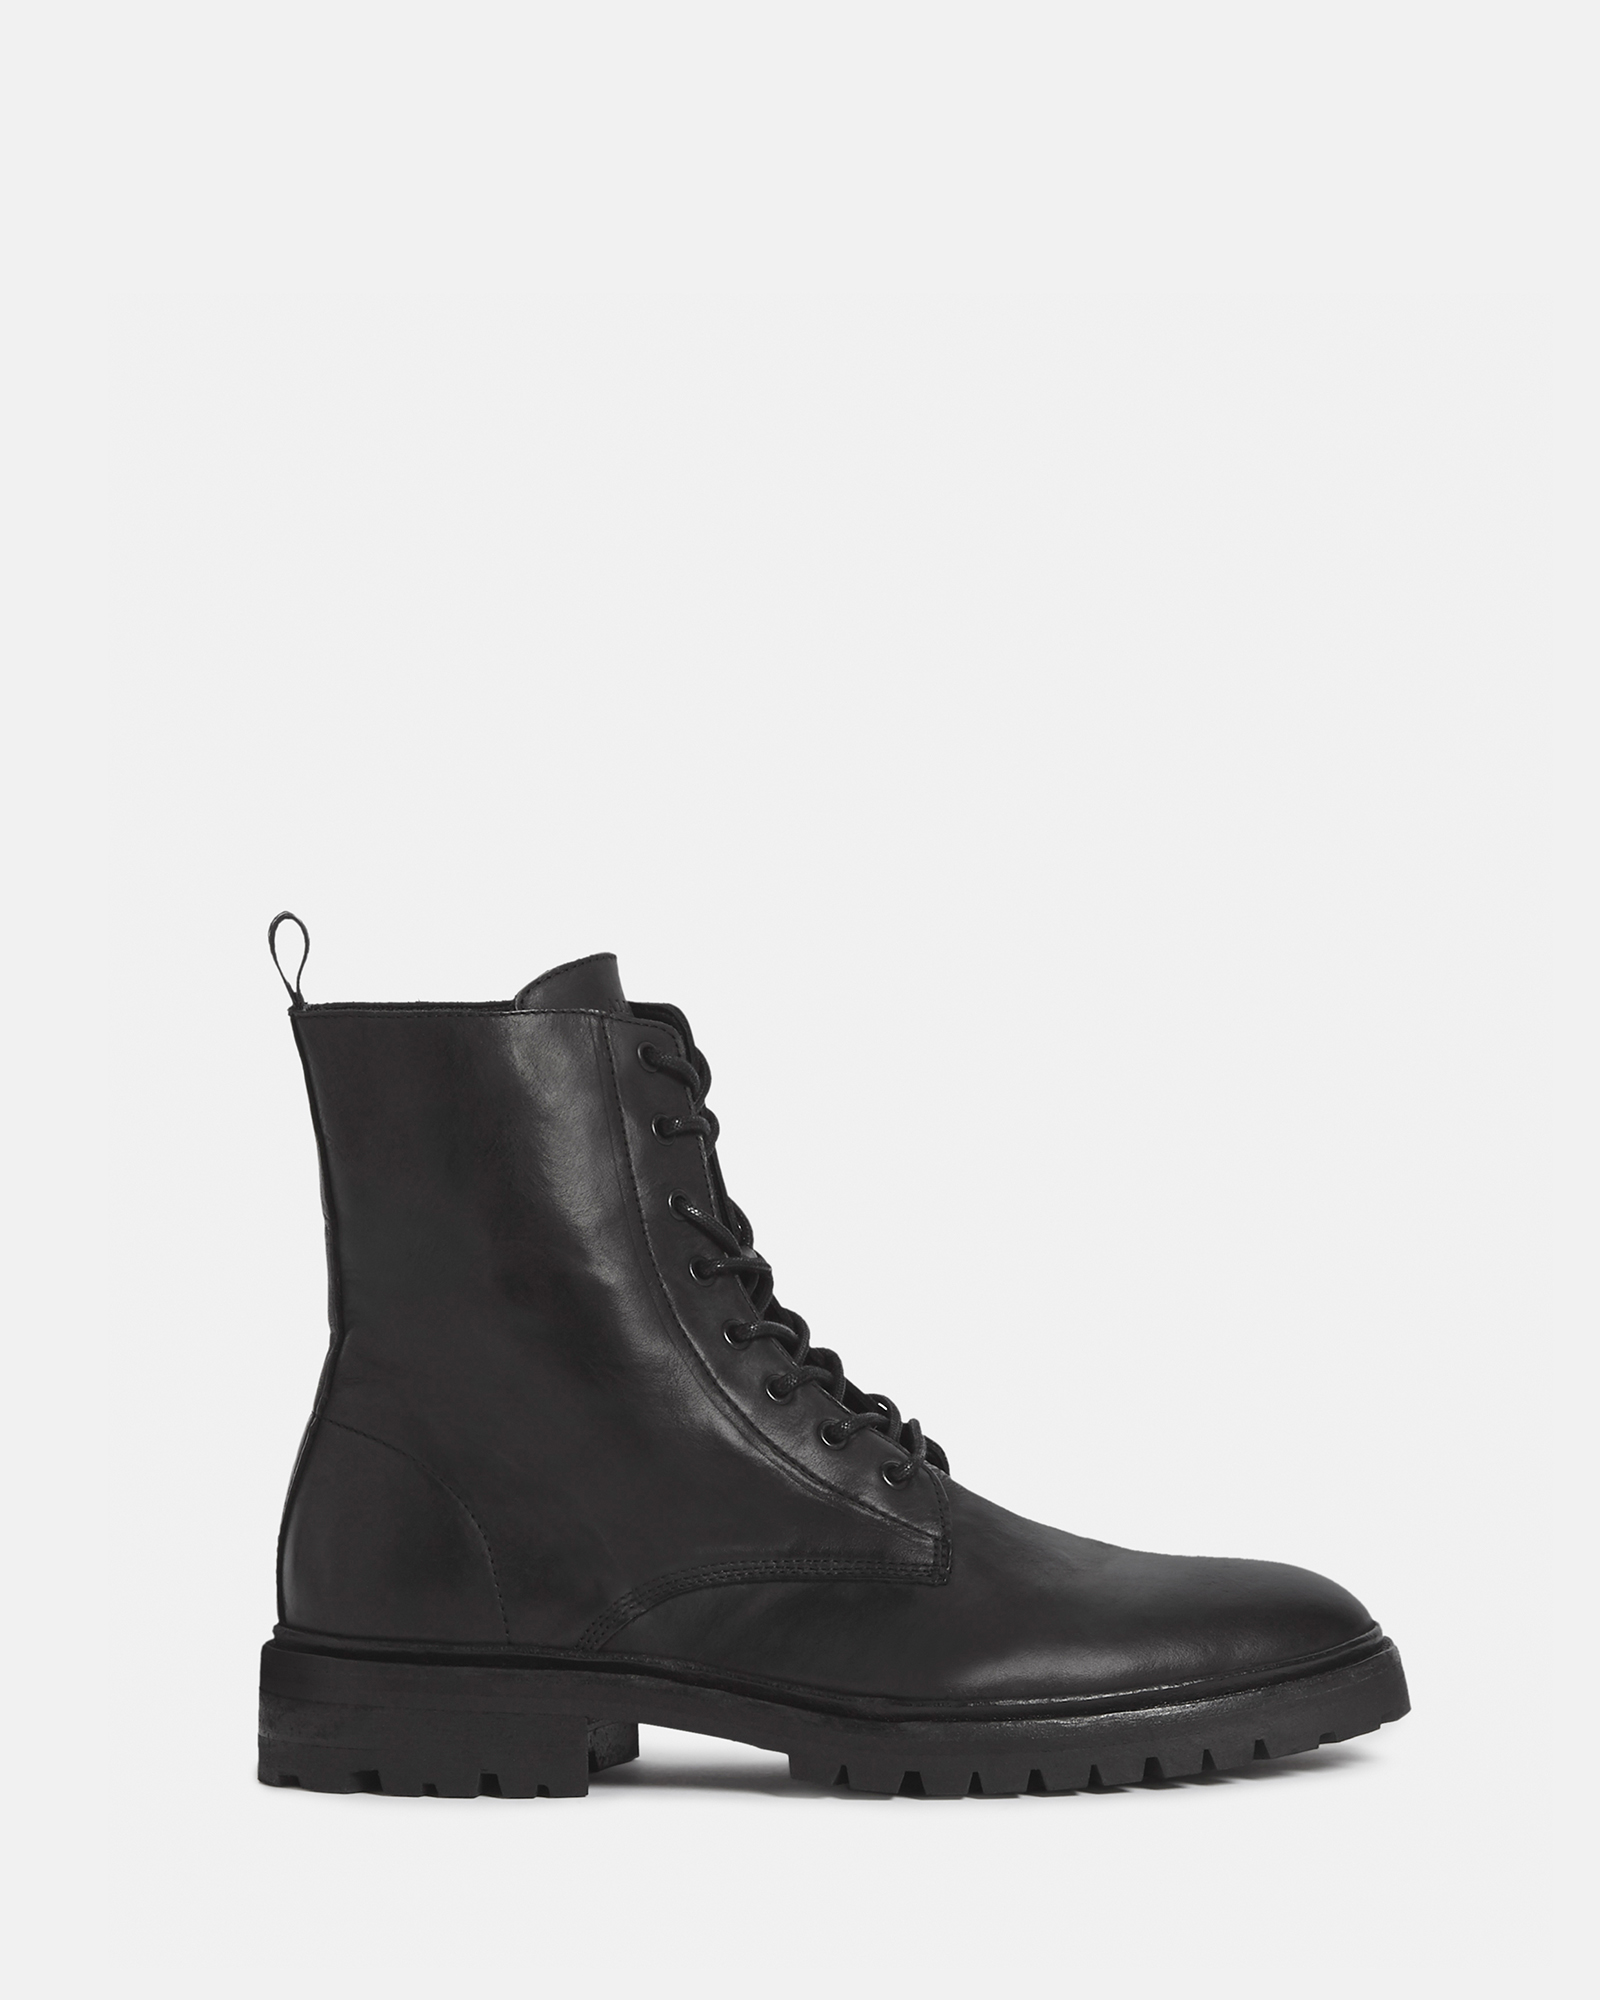 AllSaints Men's Tobias Boots, Black, Size: UK 9/US 10/EU 43